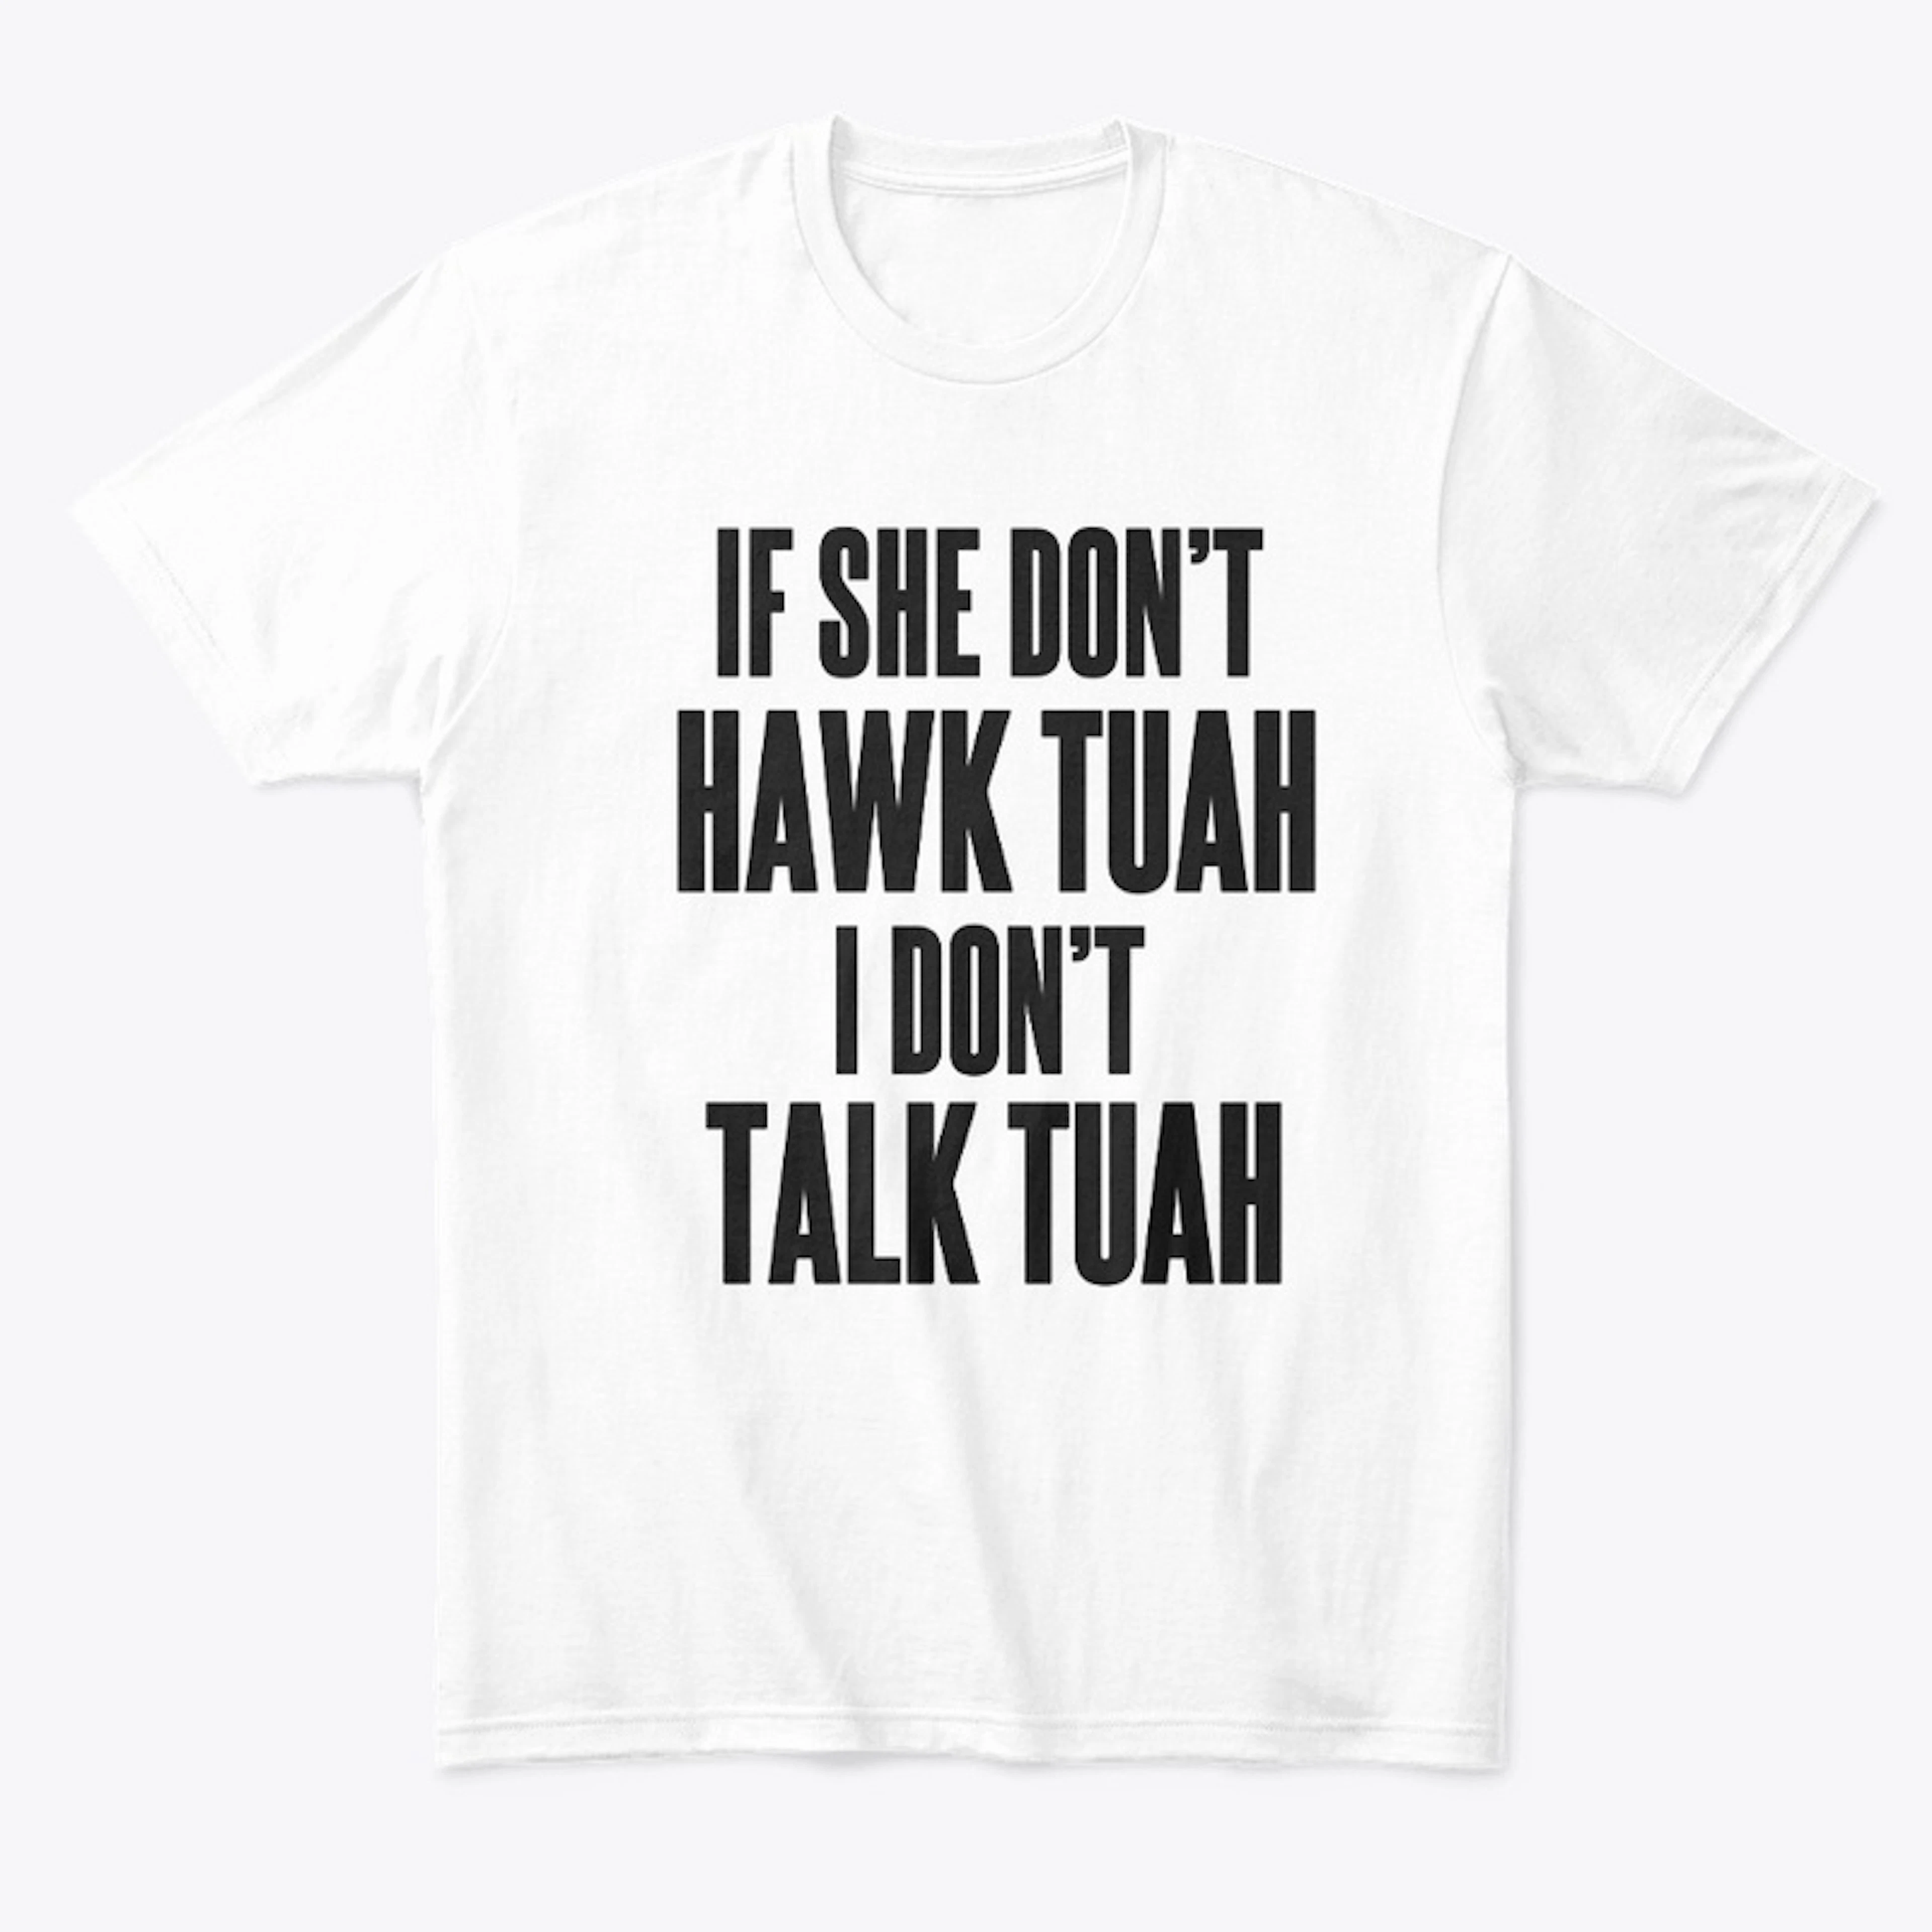 Hawk Tuah Tee, White